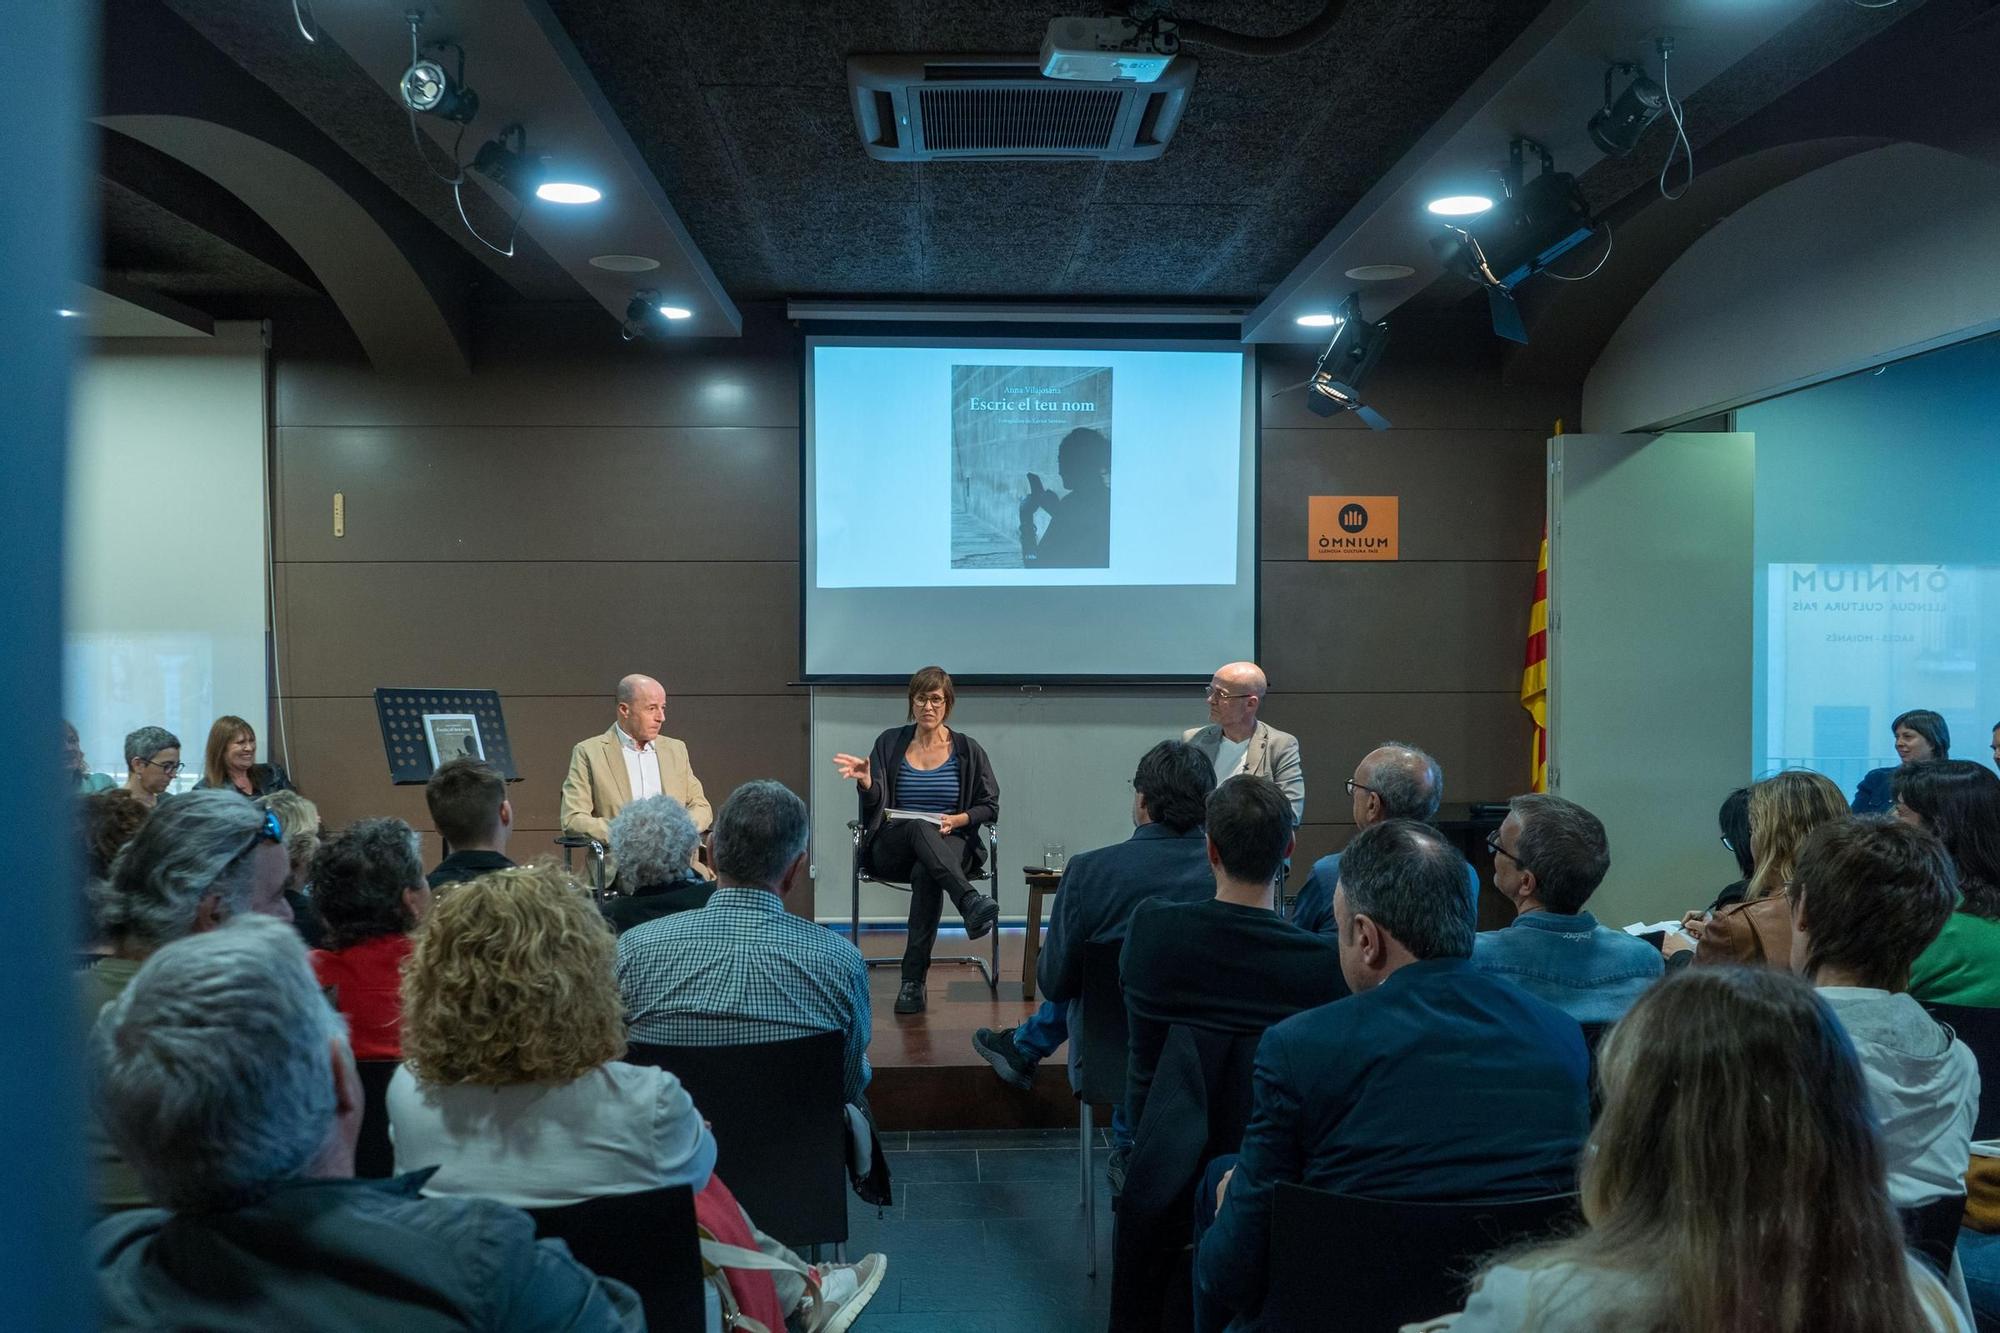 Totes les imatges de la presentació del llibre de la periodista Anna Vilajosana a Manresa